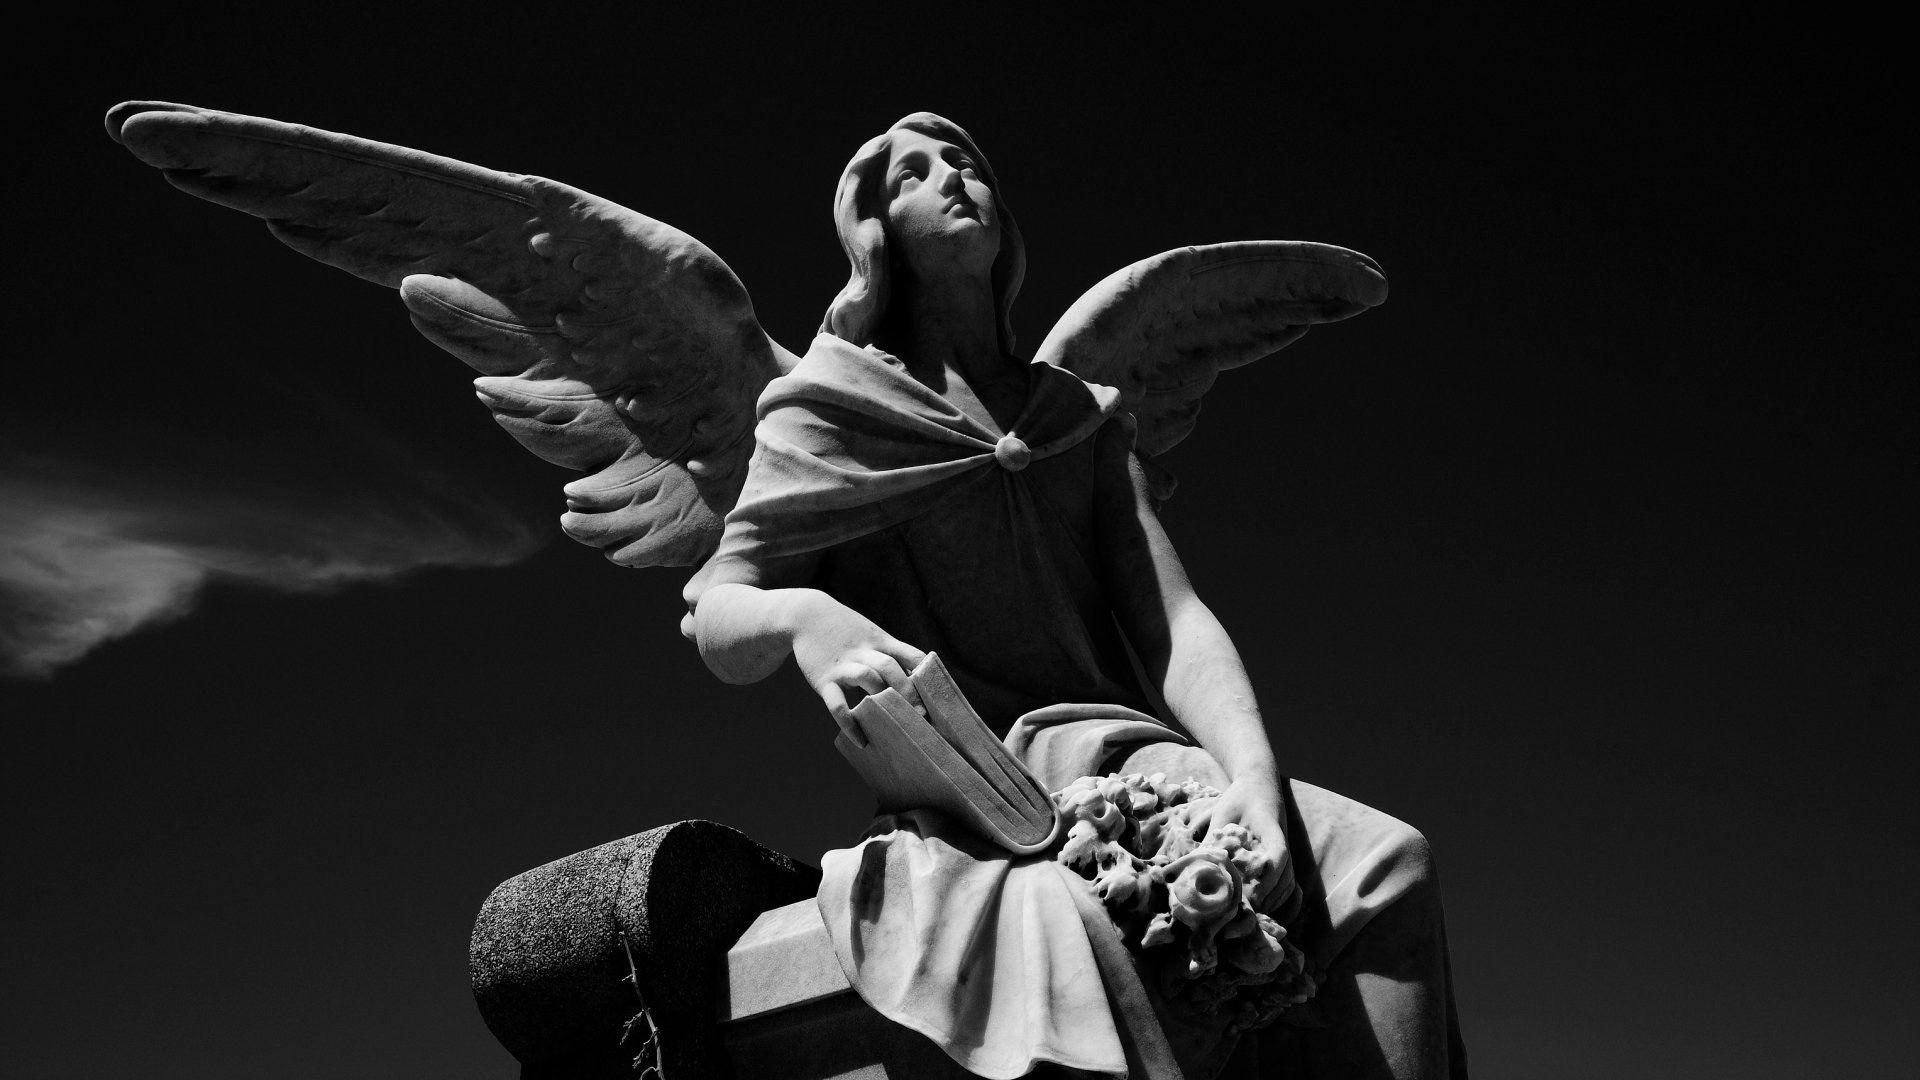 Angel Statue HD Wallpaper